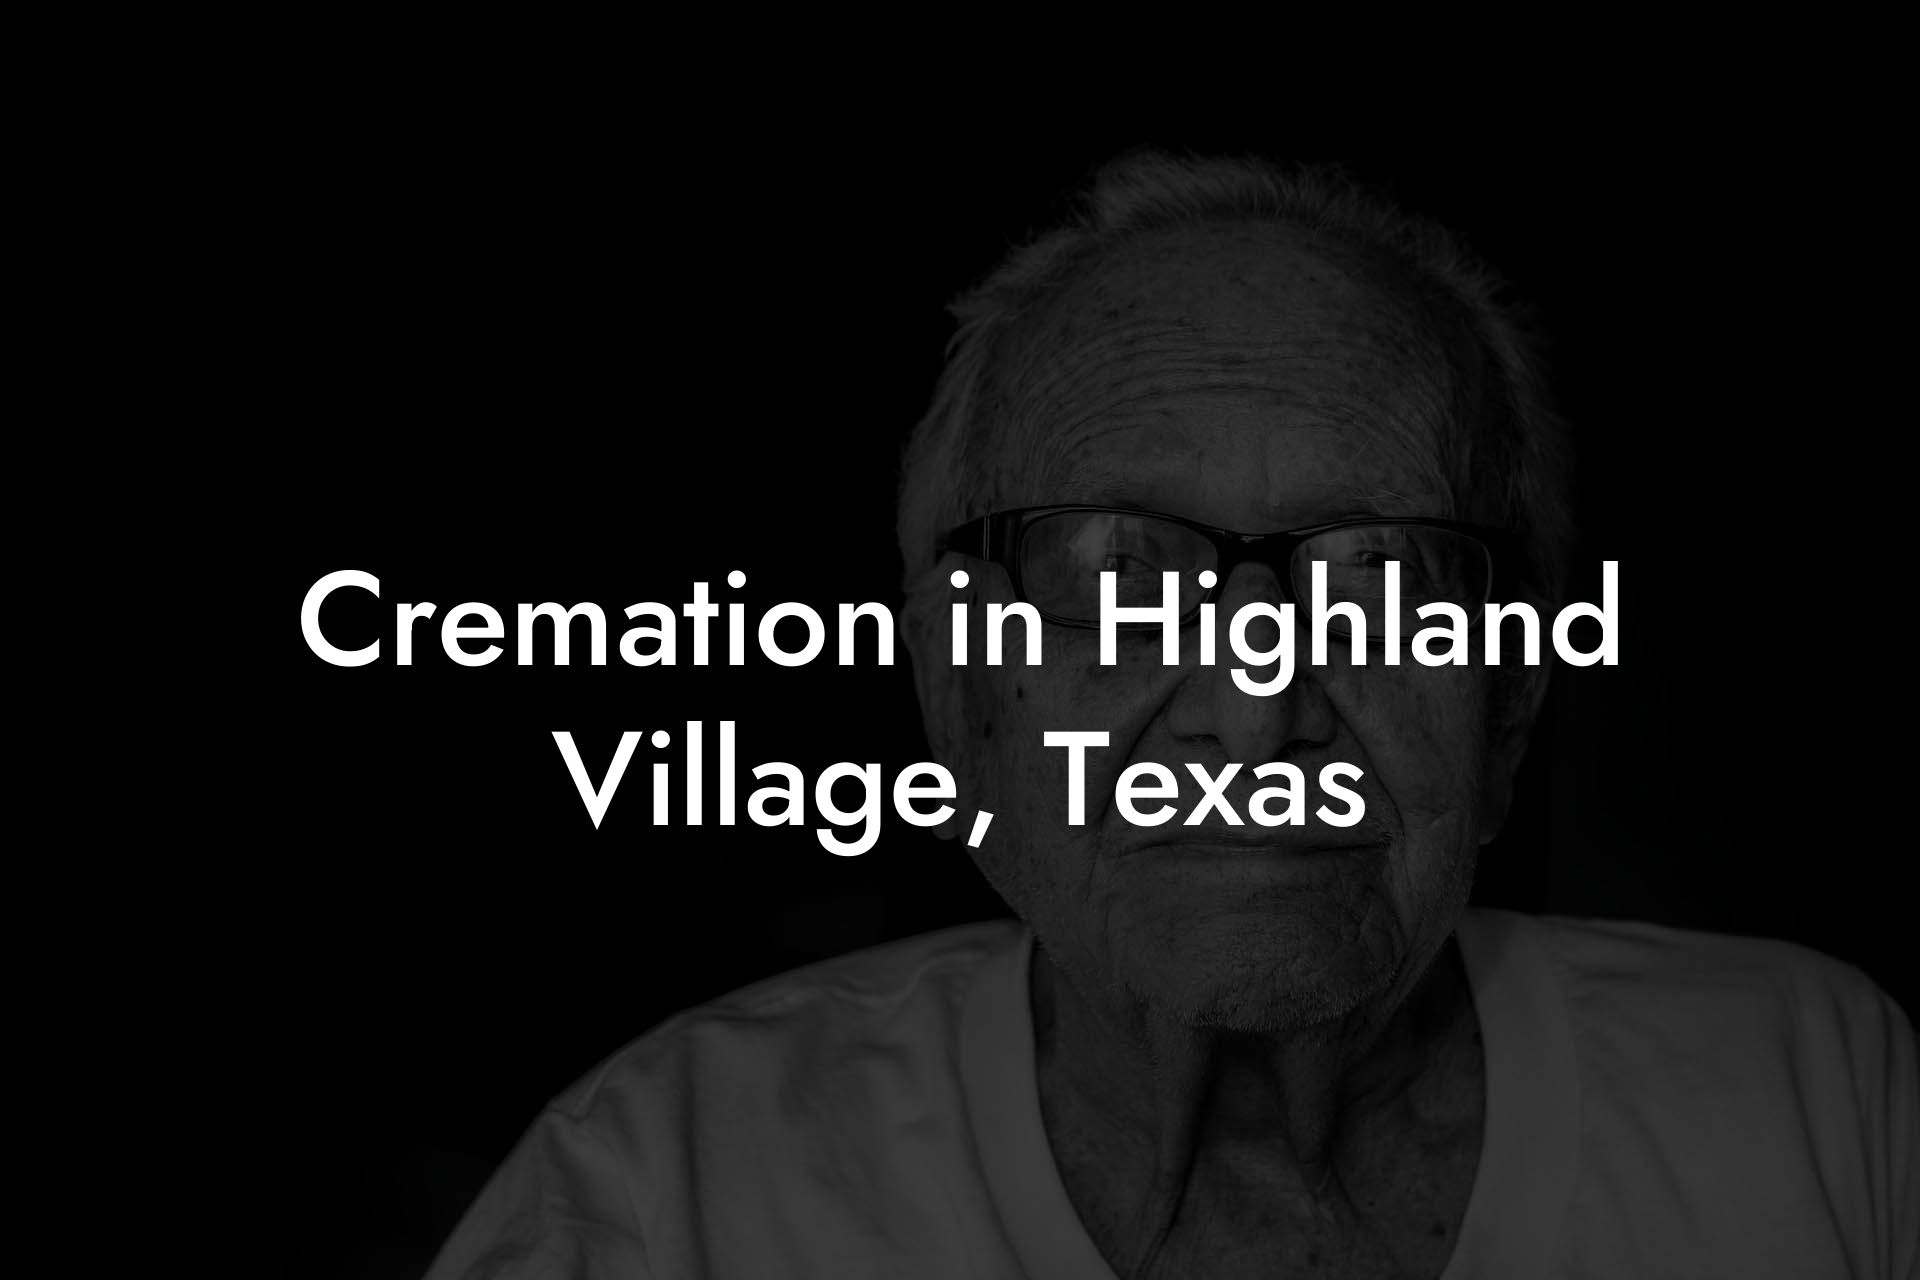 Cremation in Highland Village, Texas